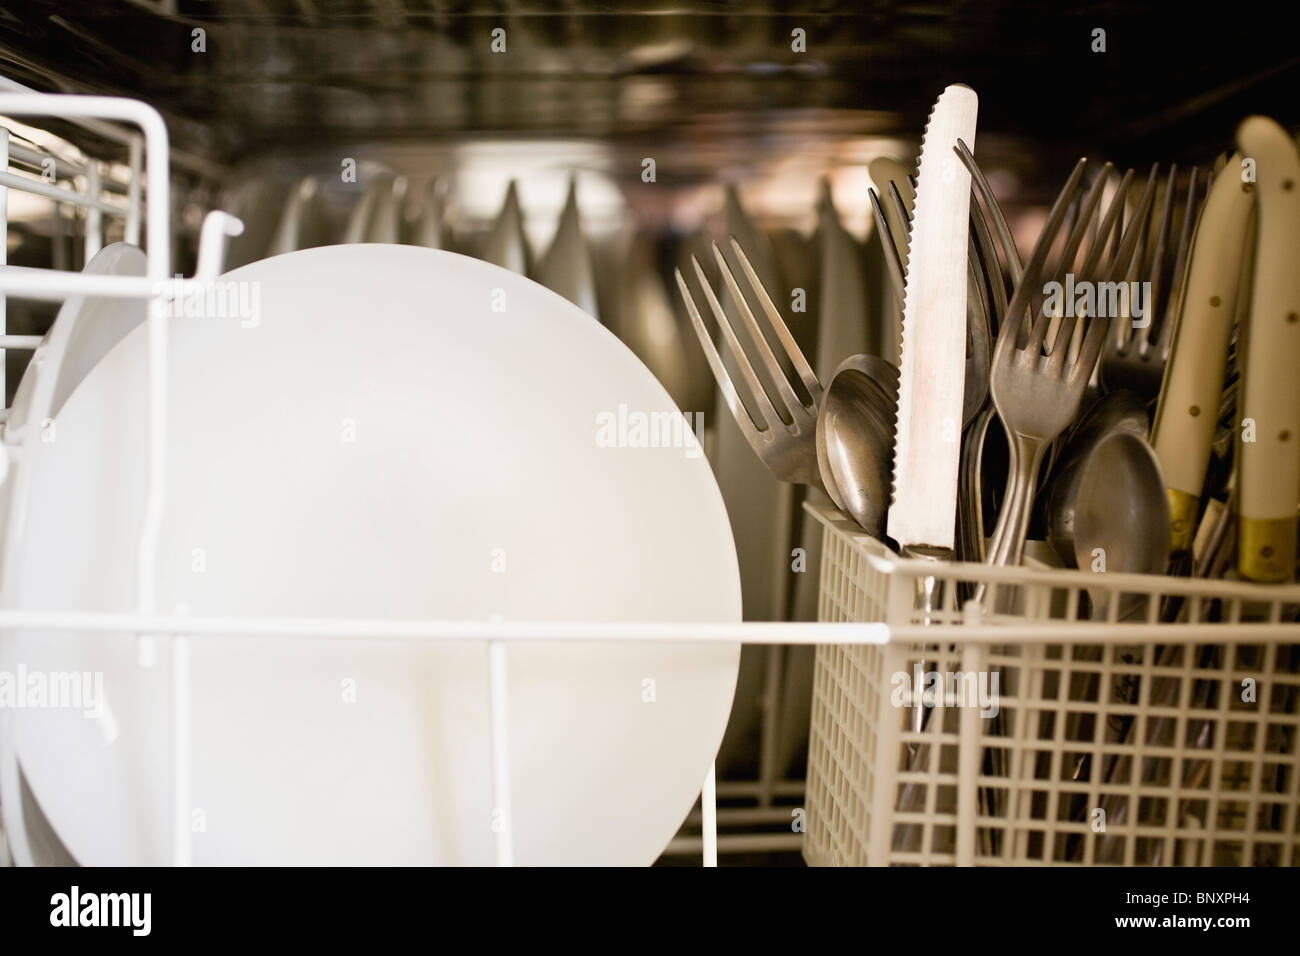 Loaded dishwasher Stock Photo